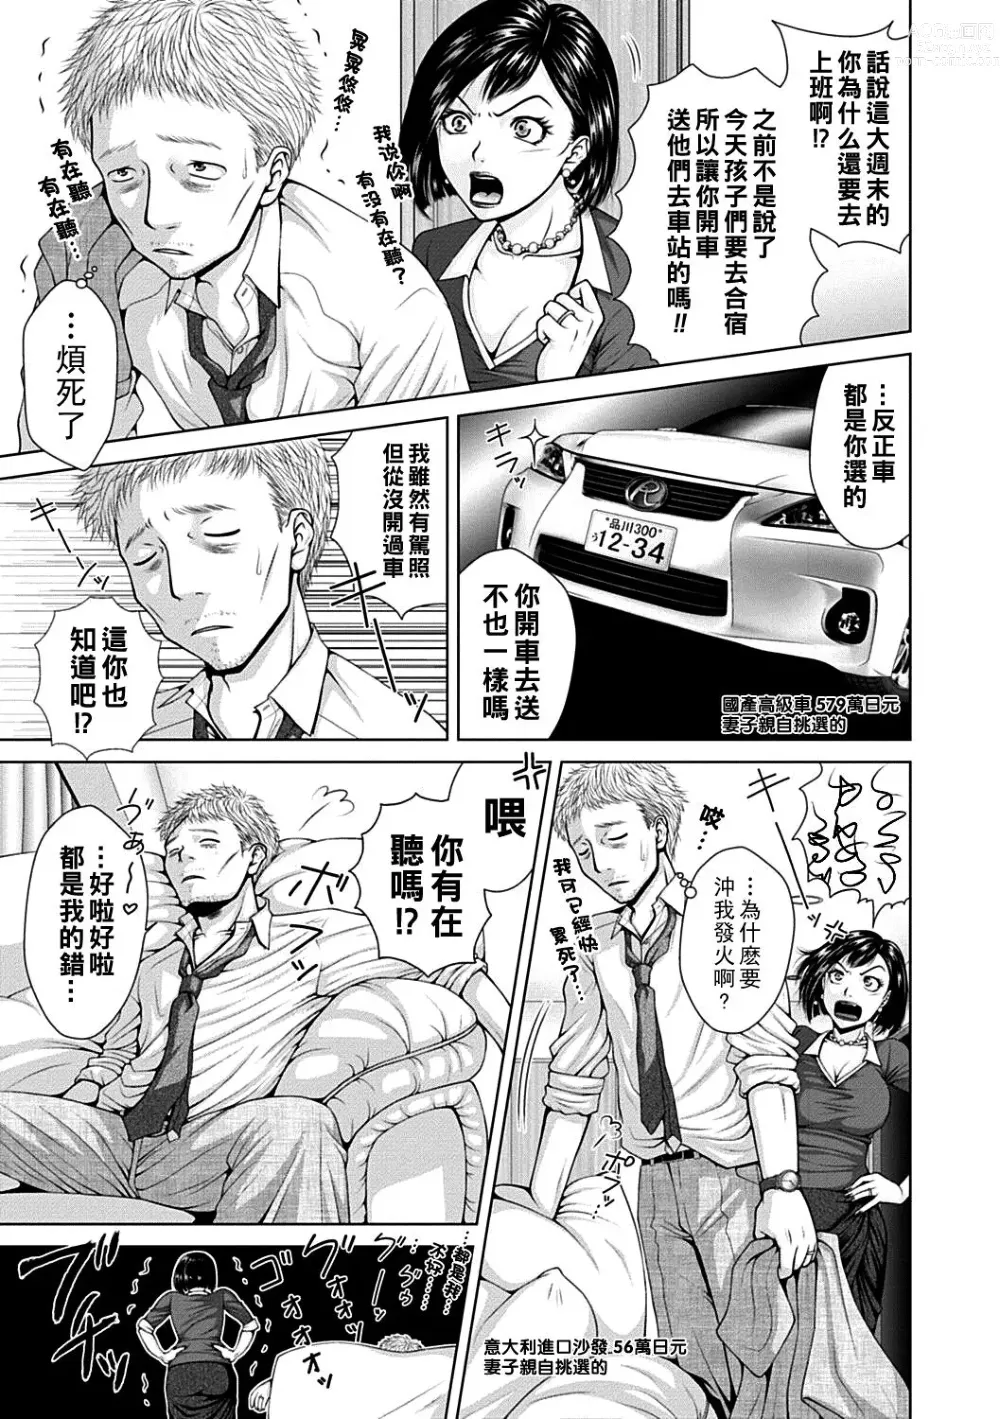 Page 3 of manga Salaryman  Elegy